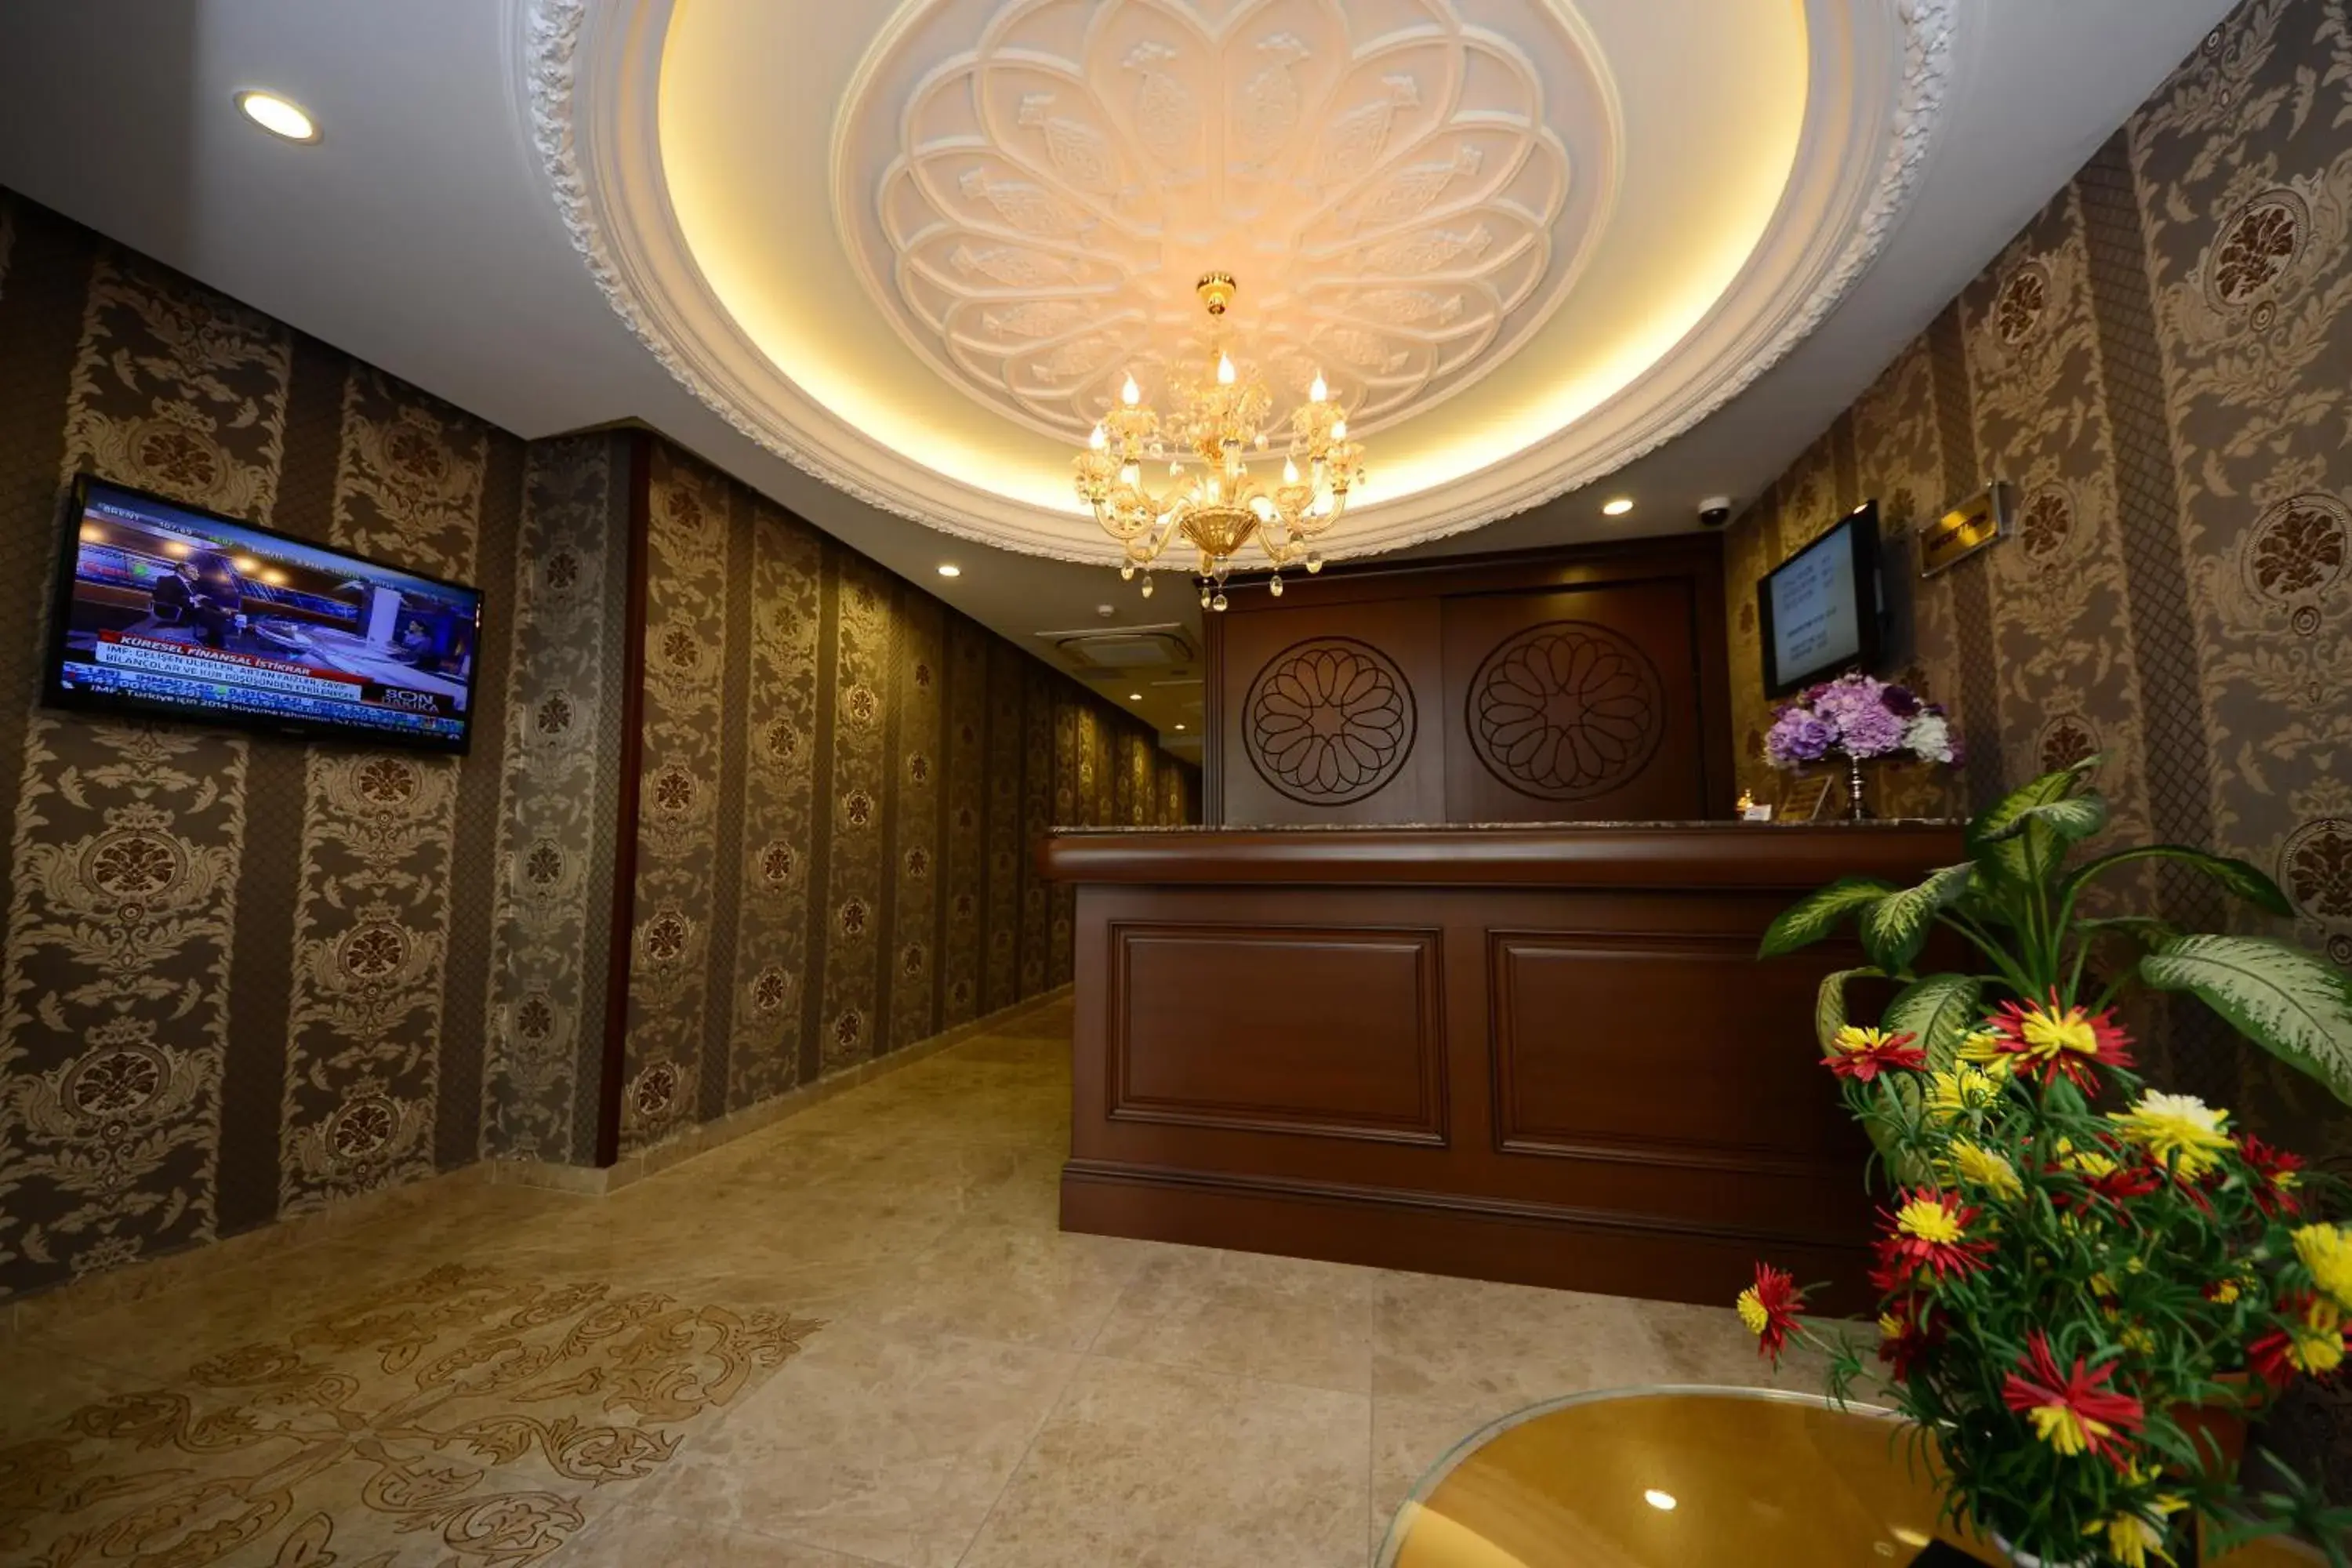 Lobby or reception, Lobby/Reception in Grand Bazaar Hotel